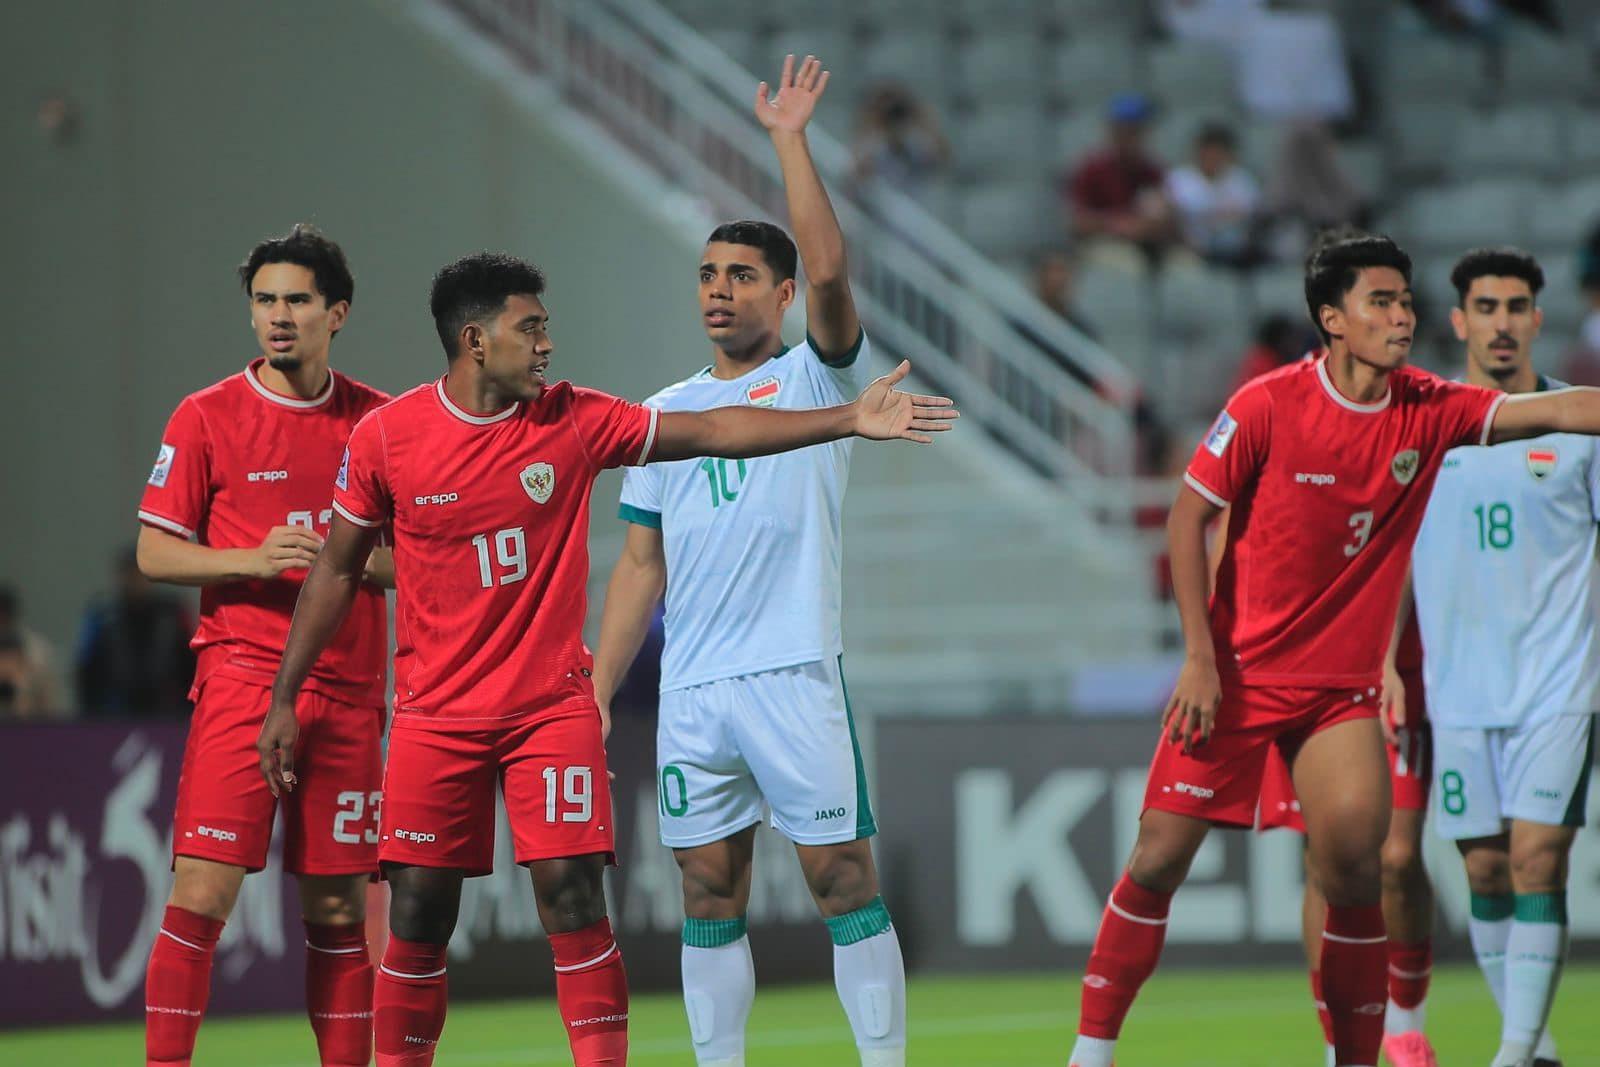 Trực tiếp U23 Indonesia 1-1 U23 Iraq: U23 Indonesia chơi hứng khởi